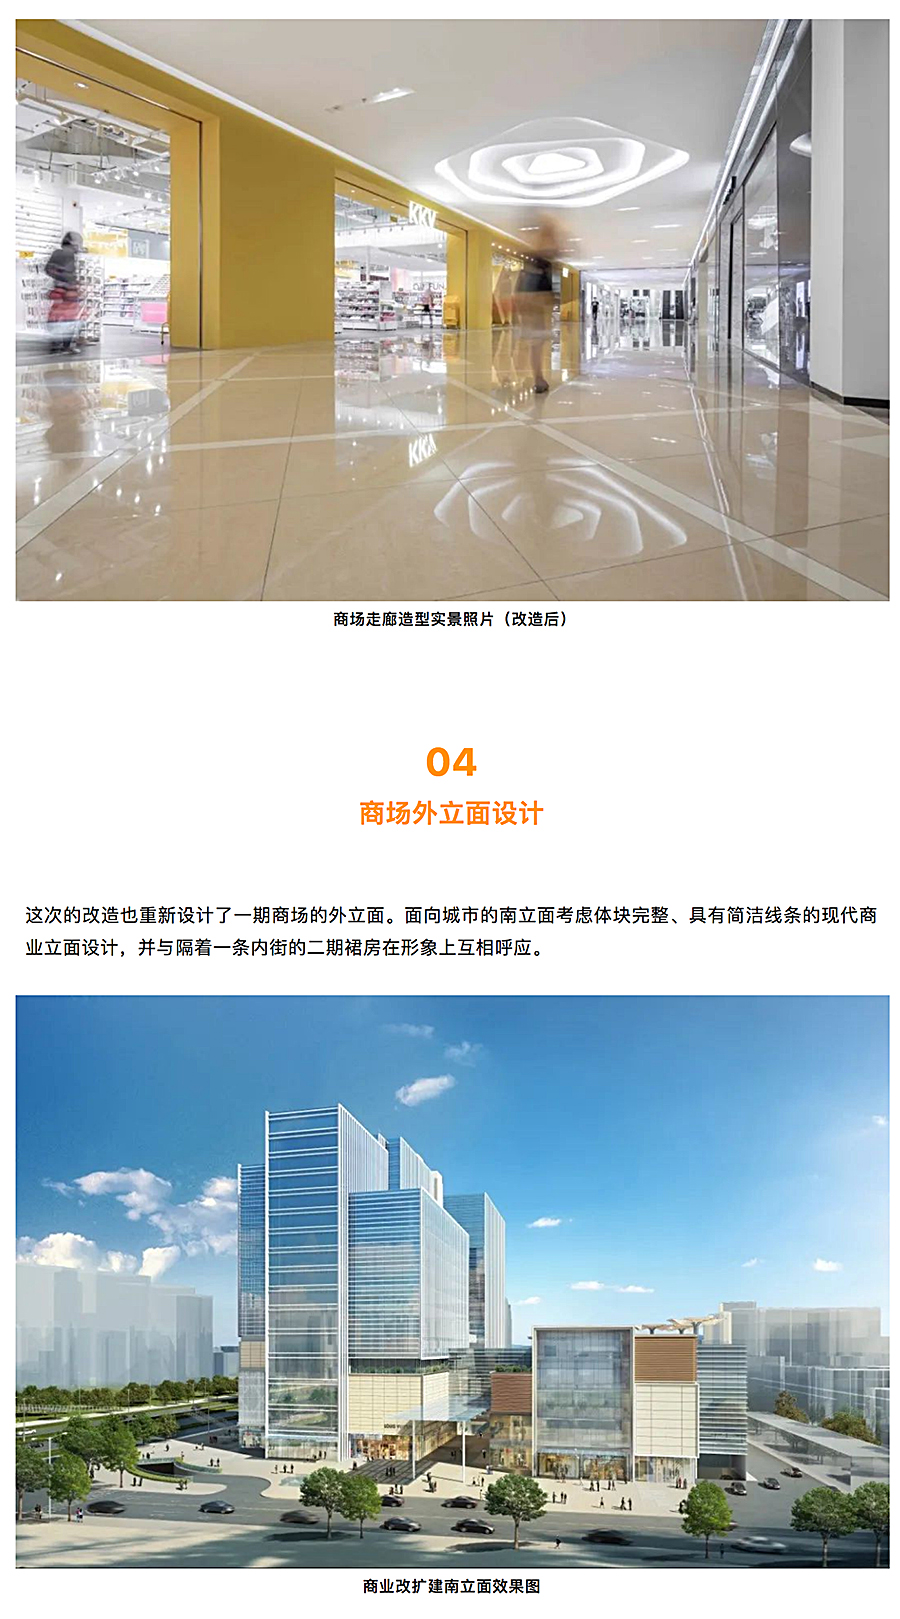 与时俱进的升级改造-_-南京龙江新城市广场一期商业改造_0019_图层-20.jpg